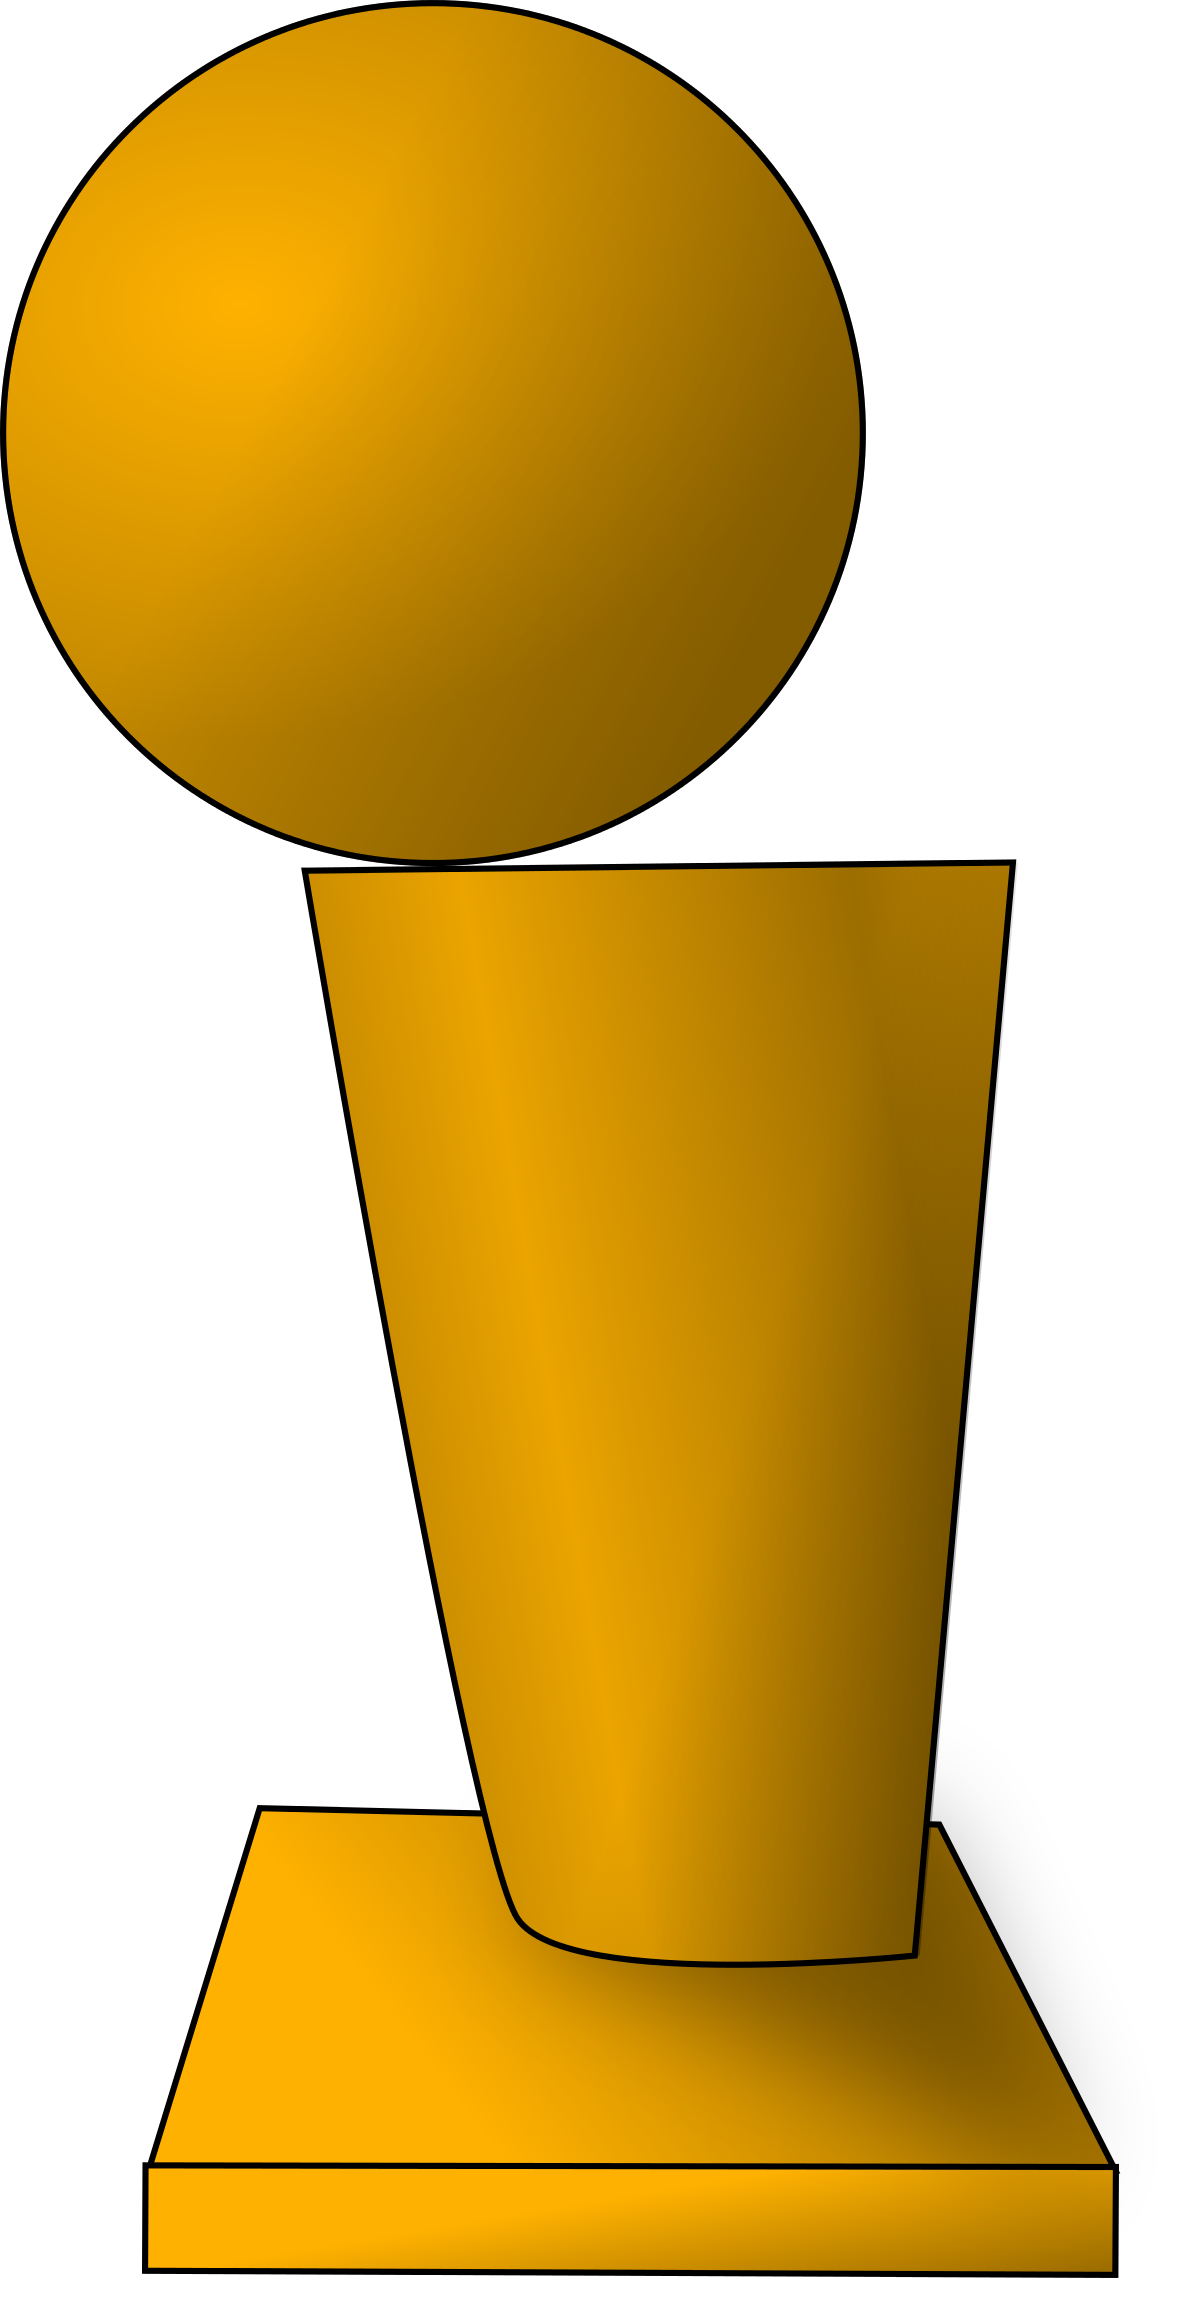 vector nba trophy